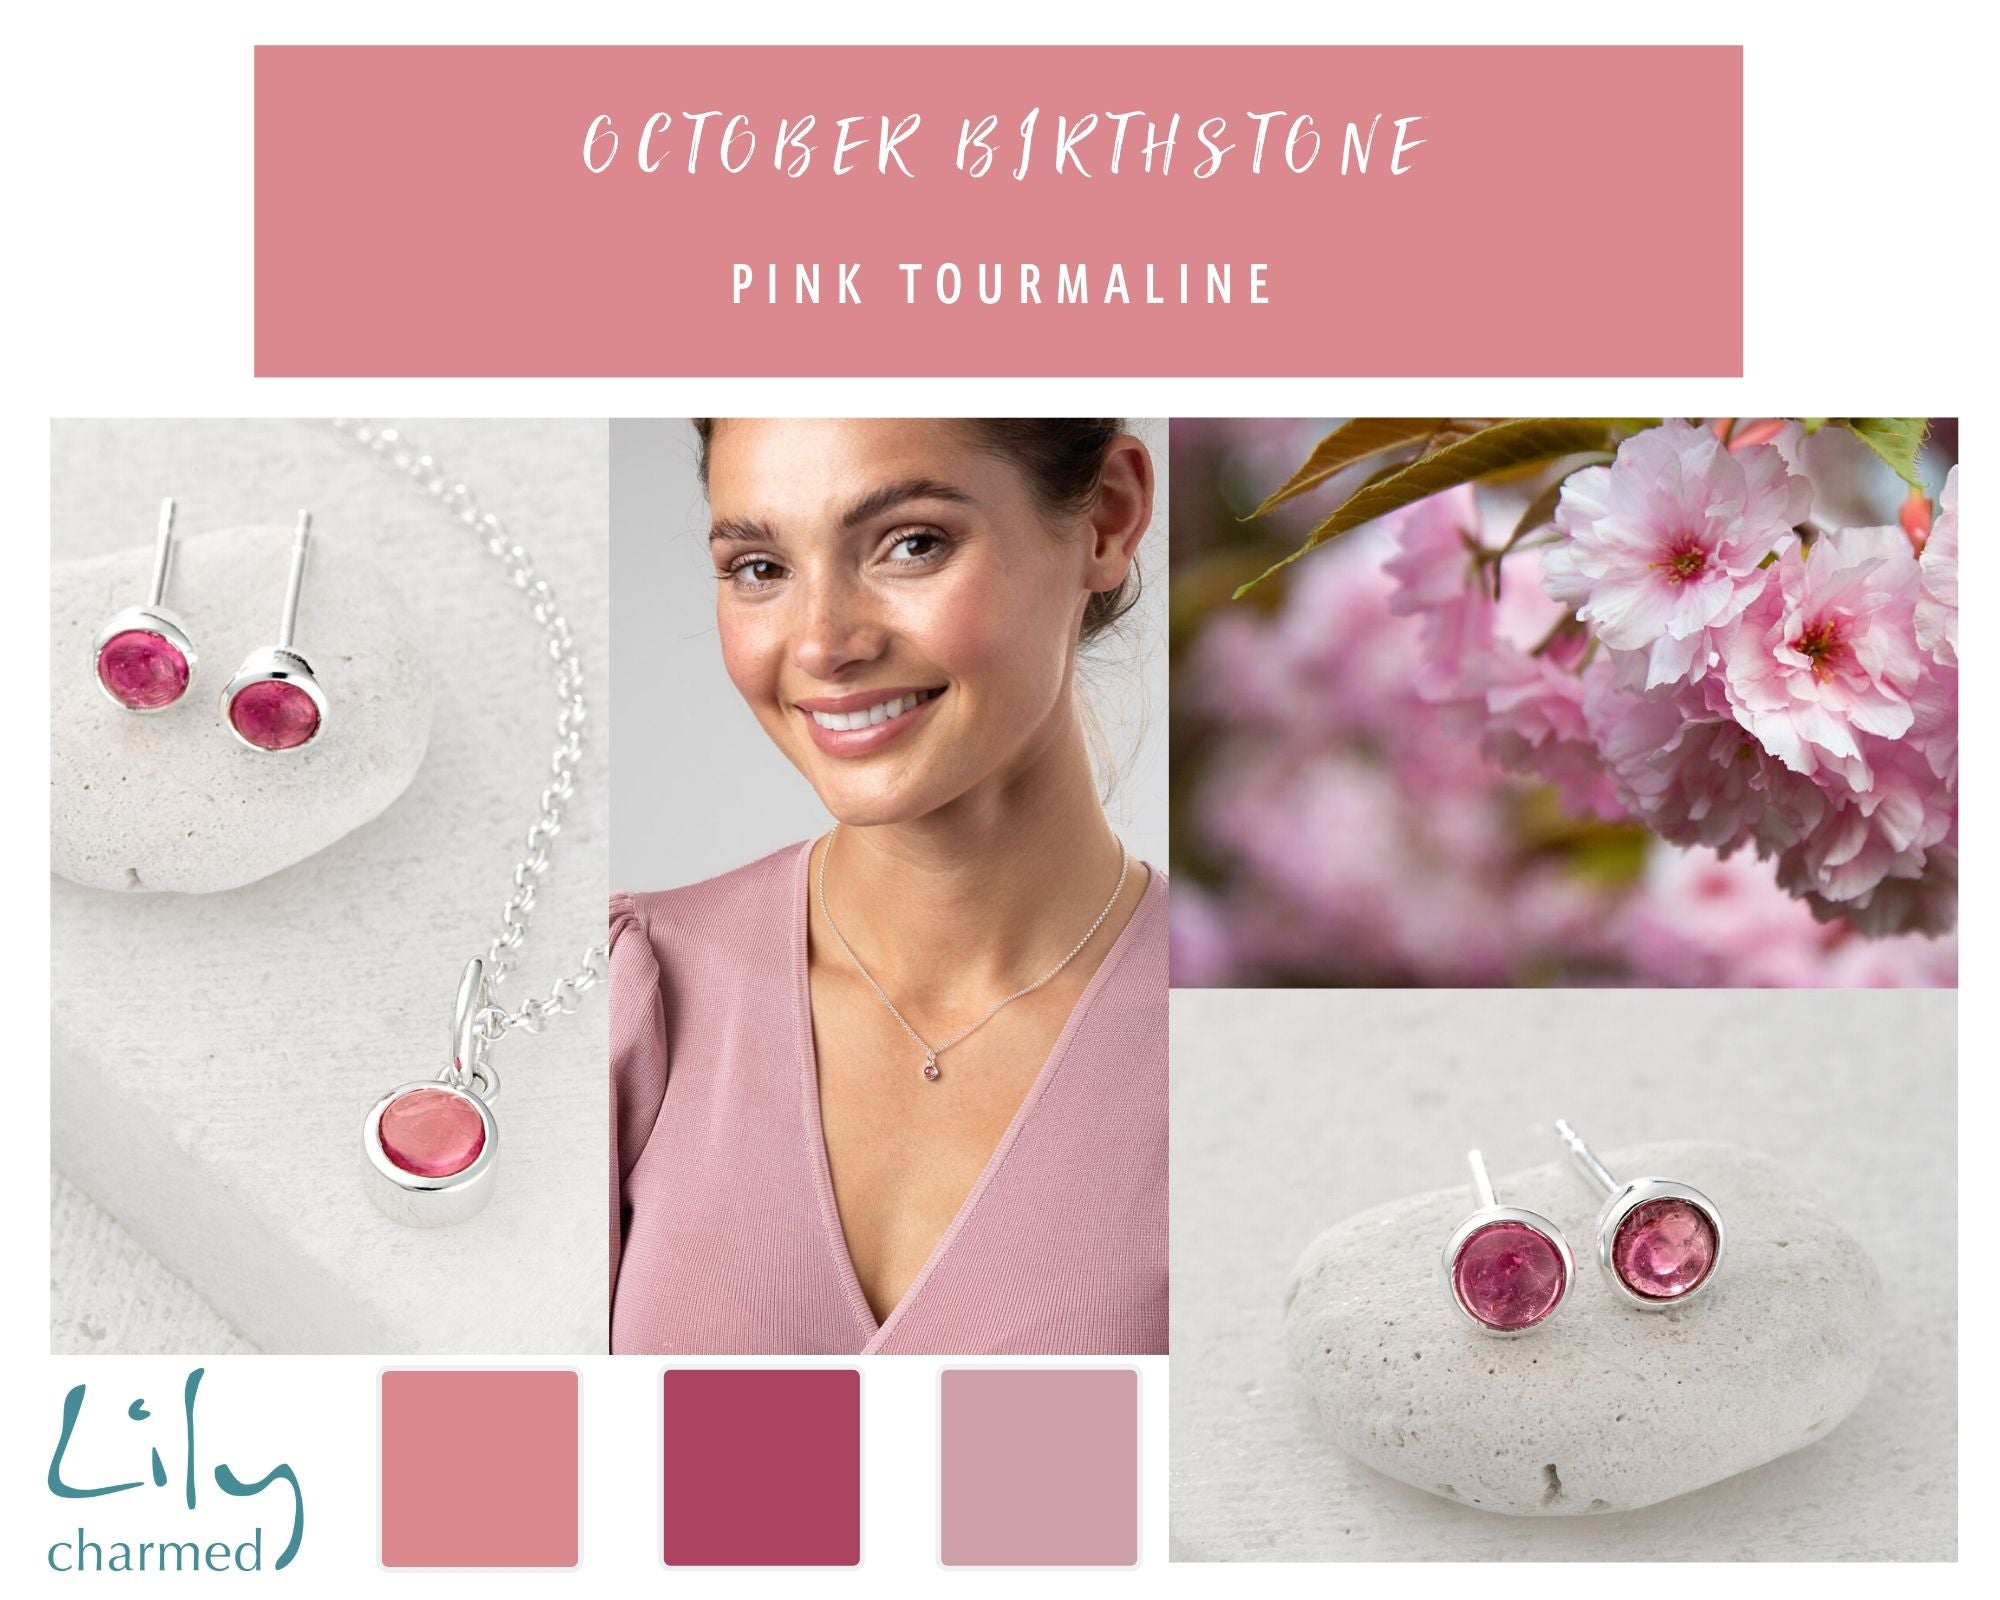 October Birthstone Pink Tourmaline